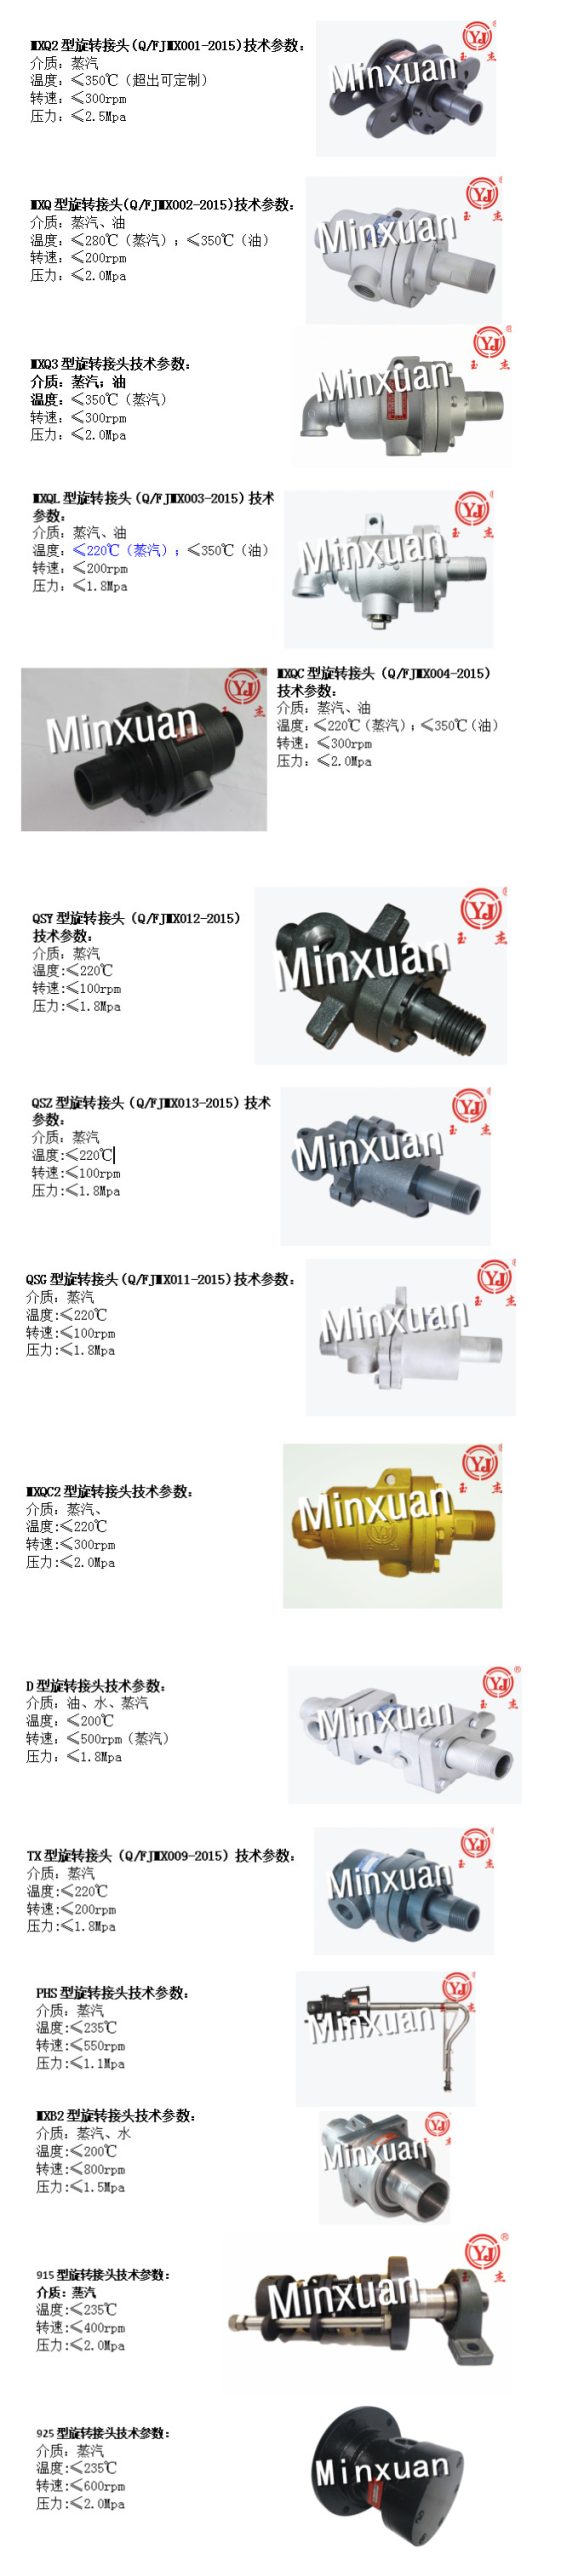 Các sản phẩm khớp nối xoay của Minxuan